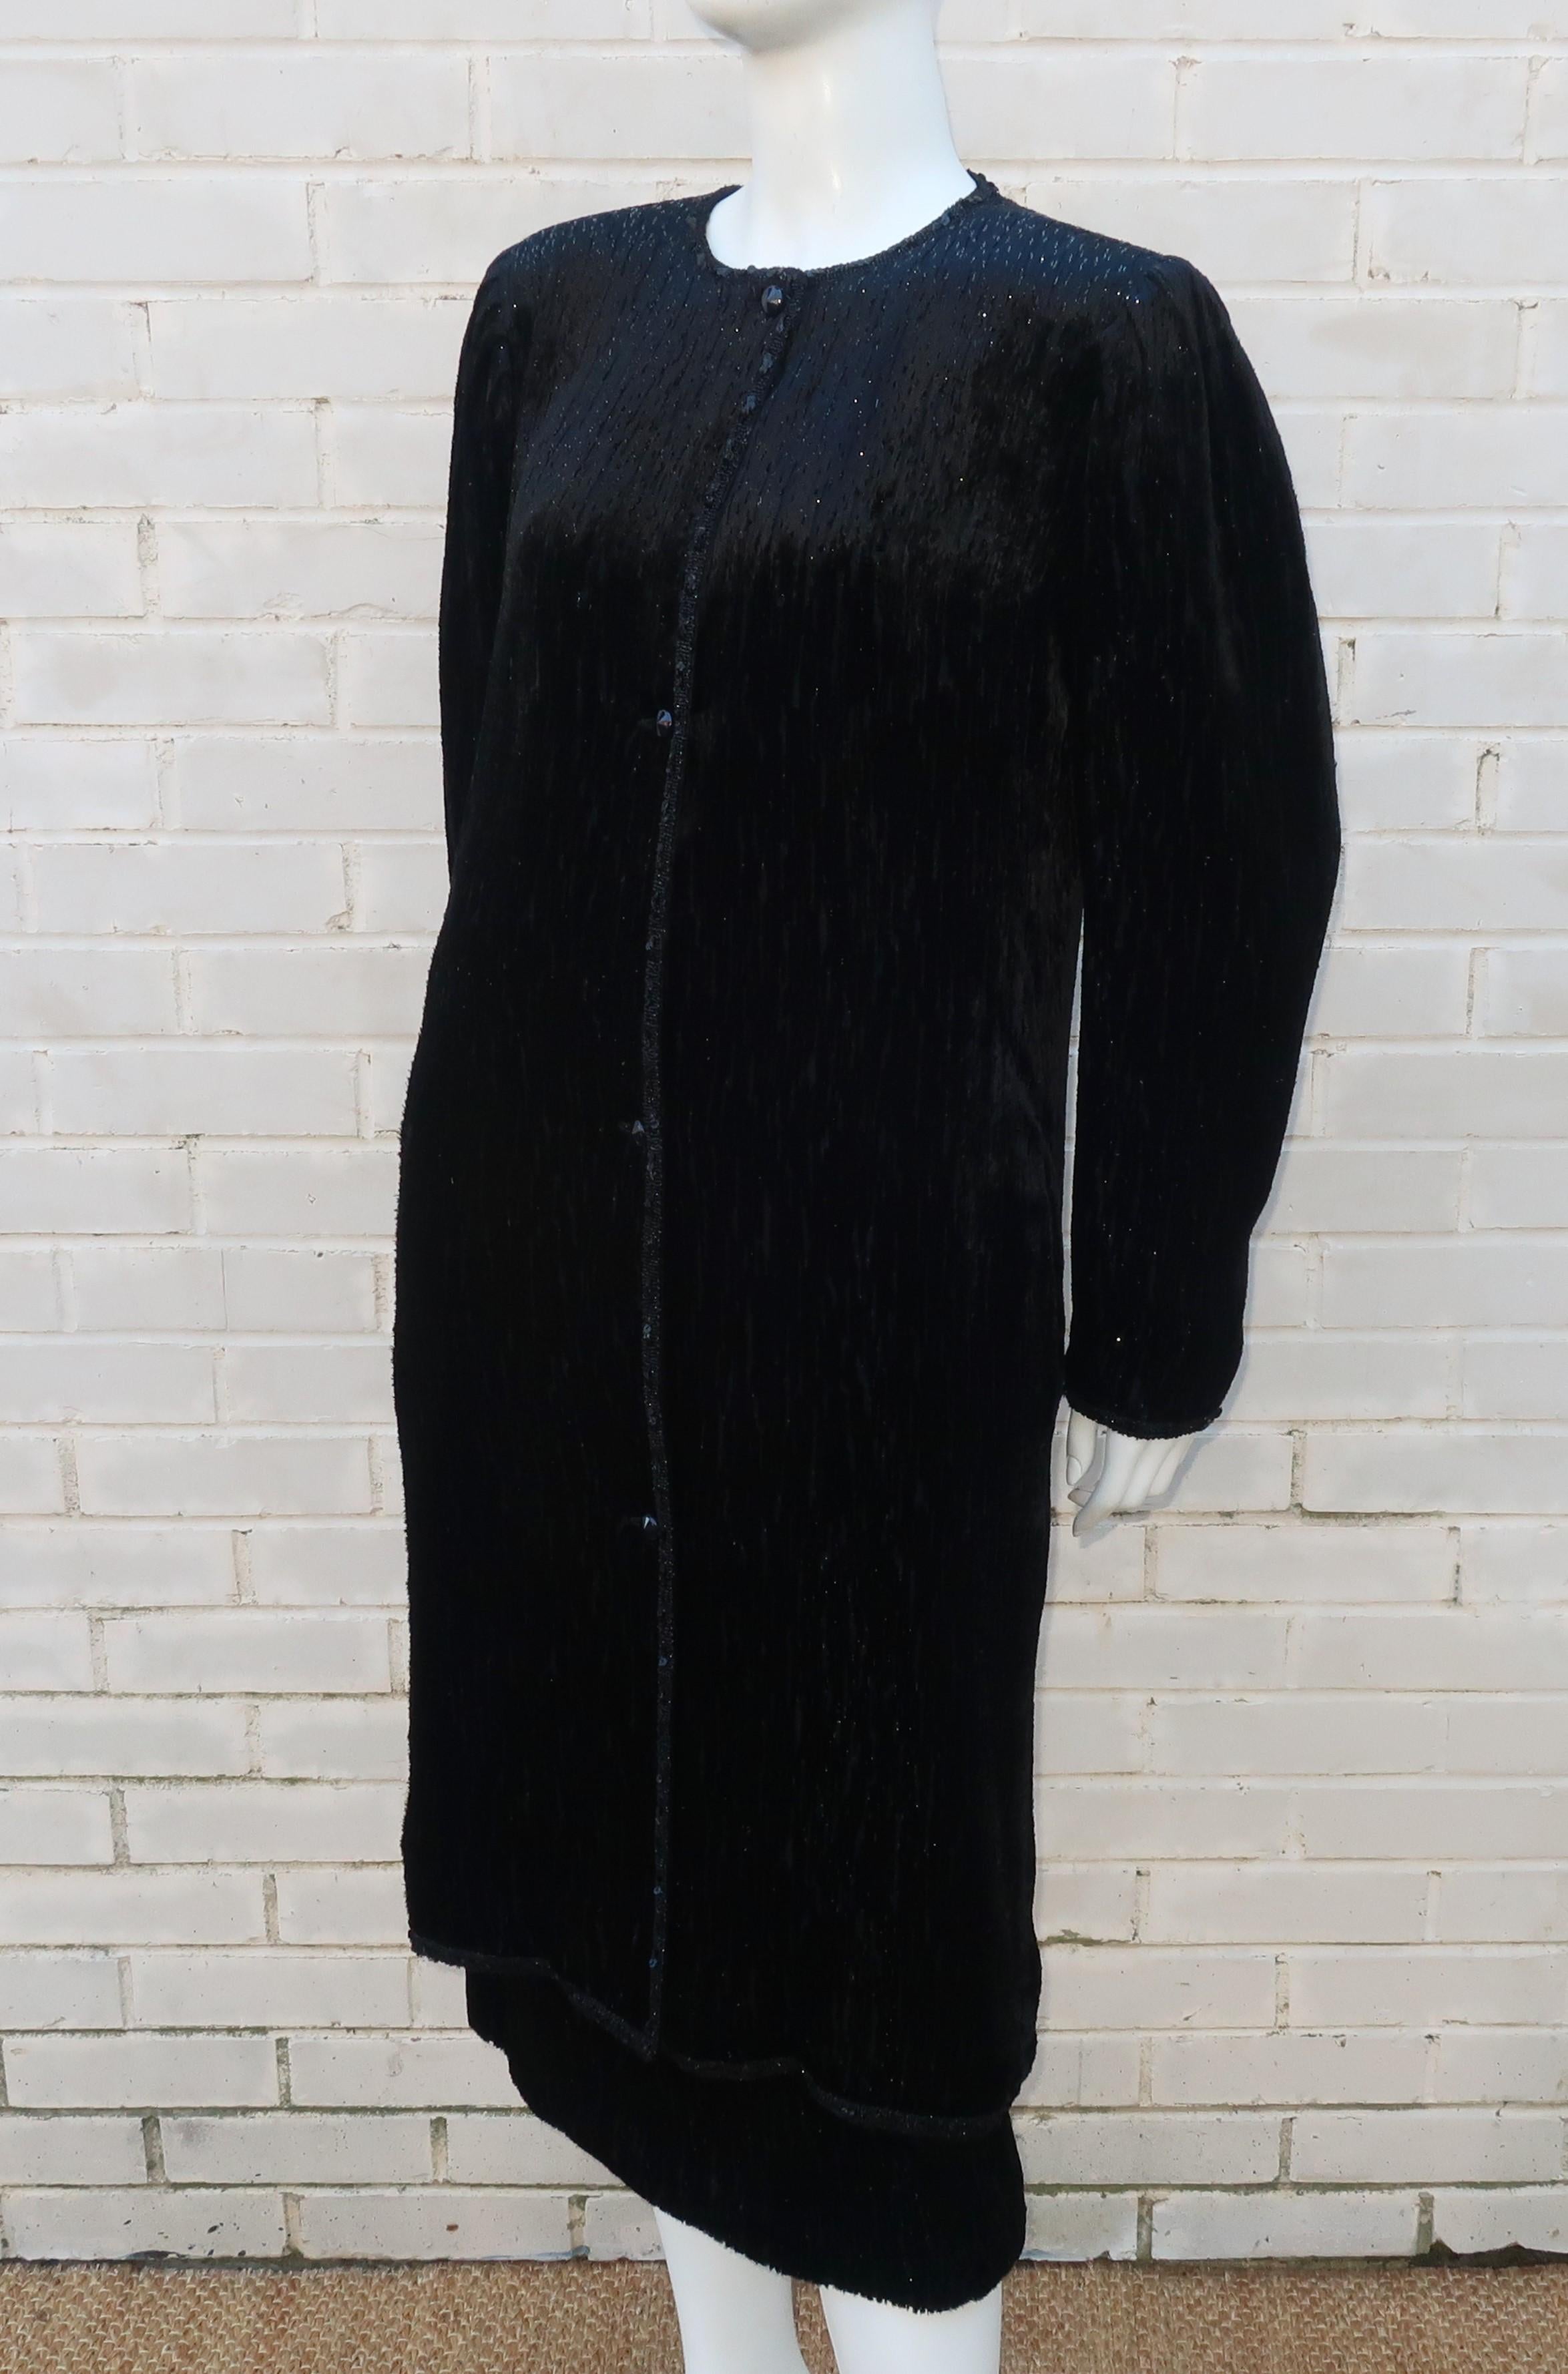 Emanuel Ungaro Black Cut Velvet Lamé Coat & Skirt Suit, 1980's 2